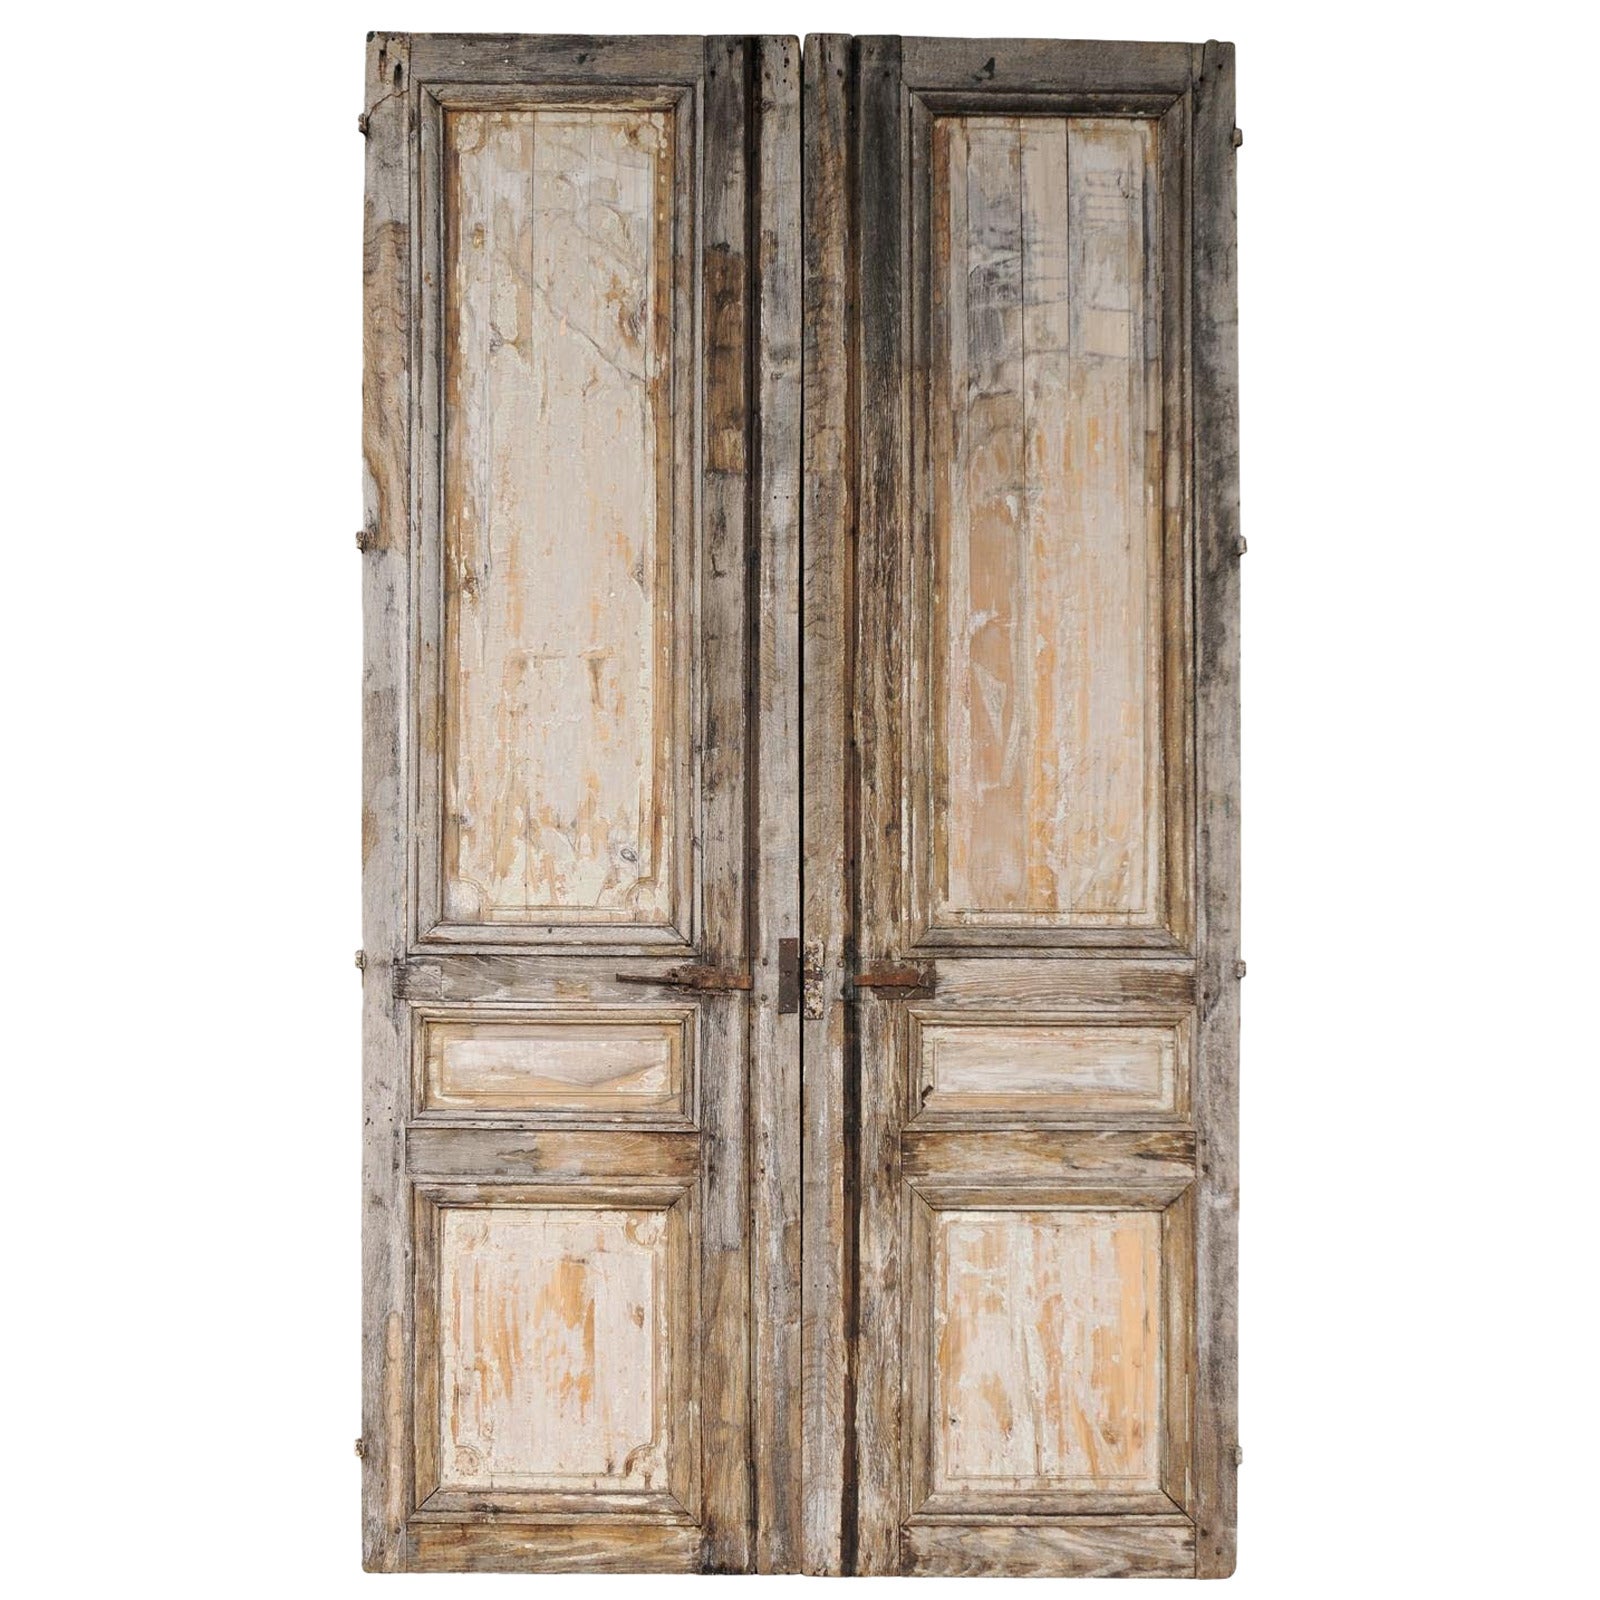 Pair of 19th Century Wooden Doors